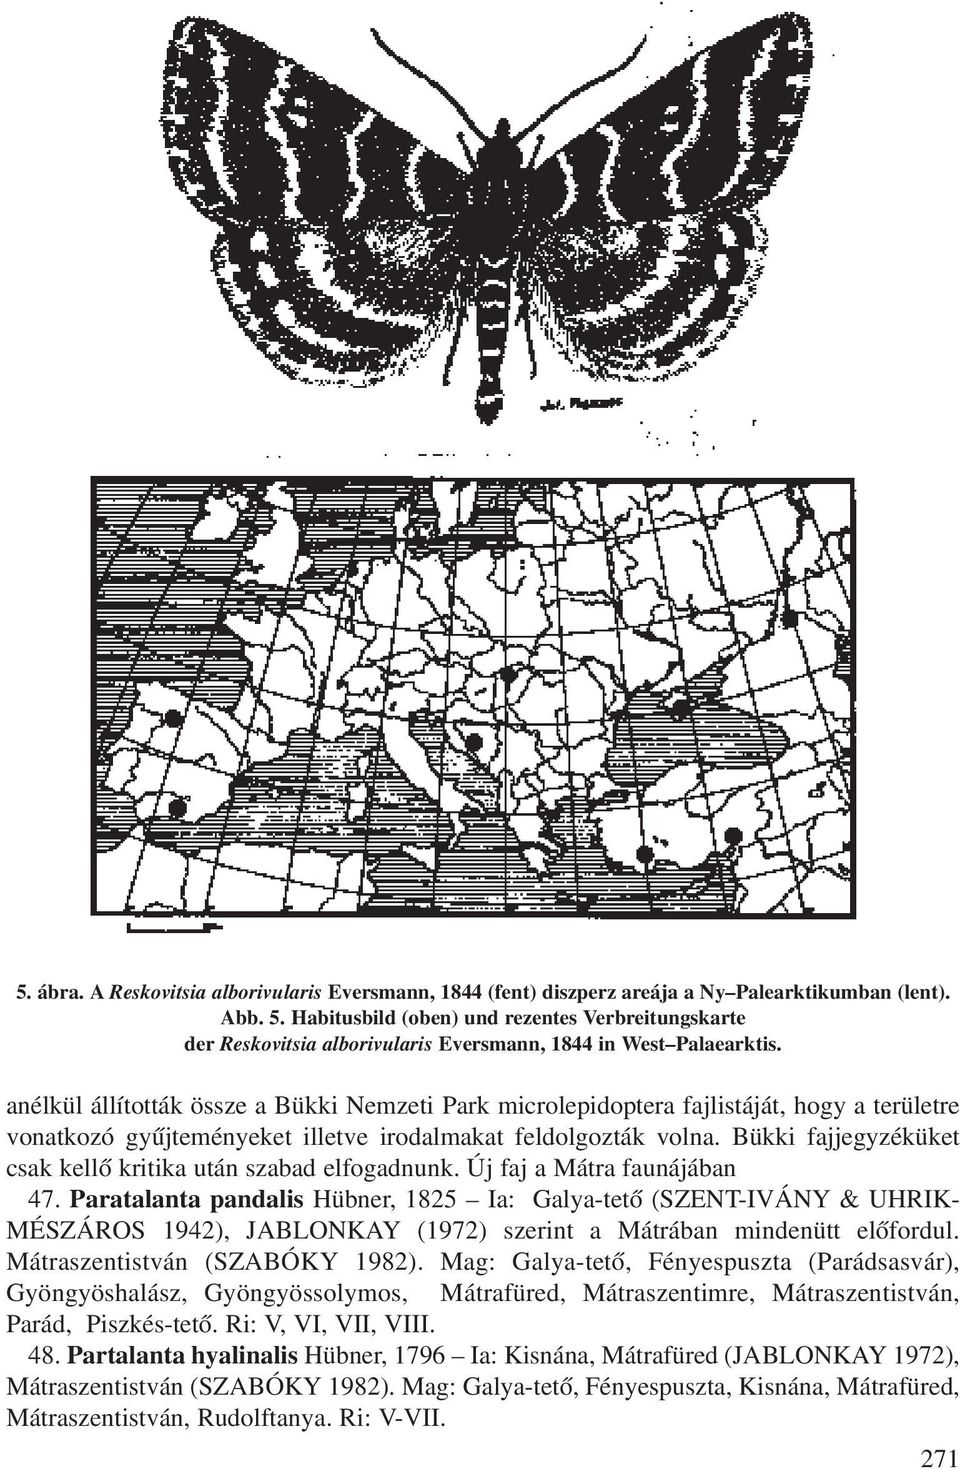 anélkül állították össze a Bükki Nemzeti Park microlepidoptera fajlistáját, hogy a területre vonatkozó gyûjteményeket illetve irodalmakat feldolgozták volna.